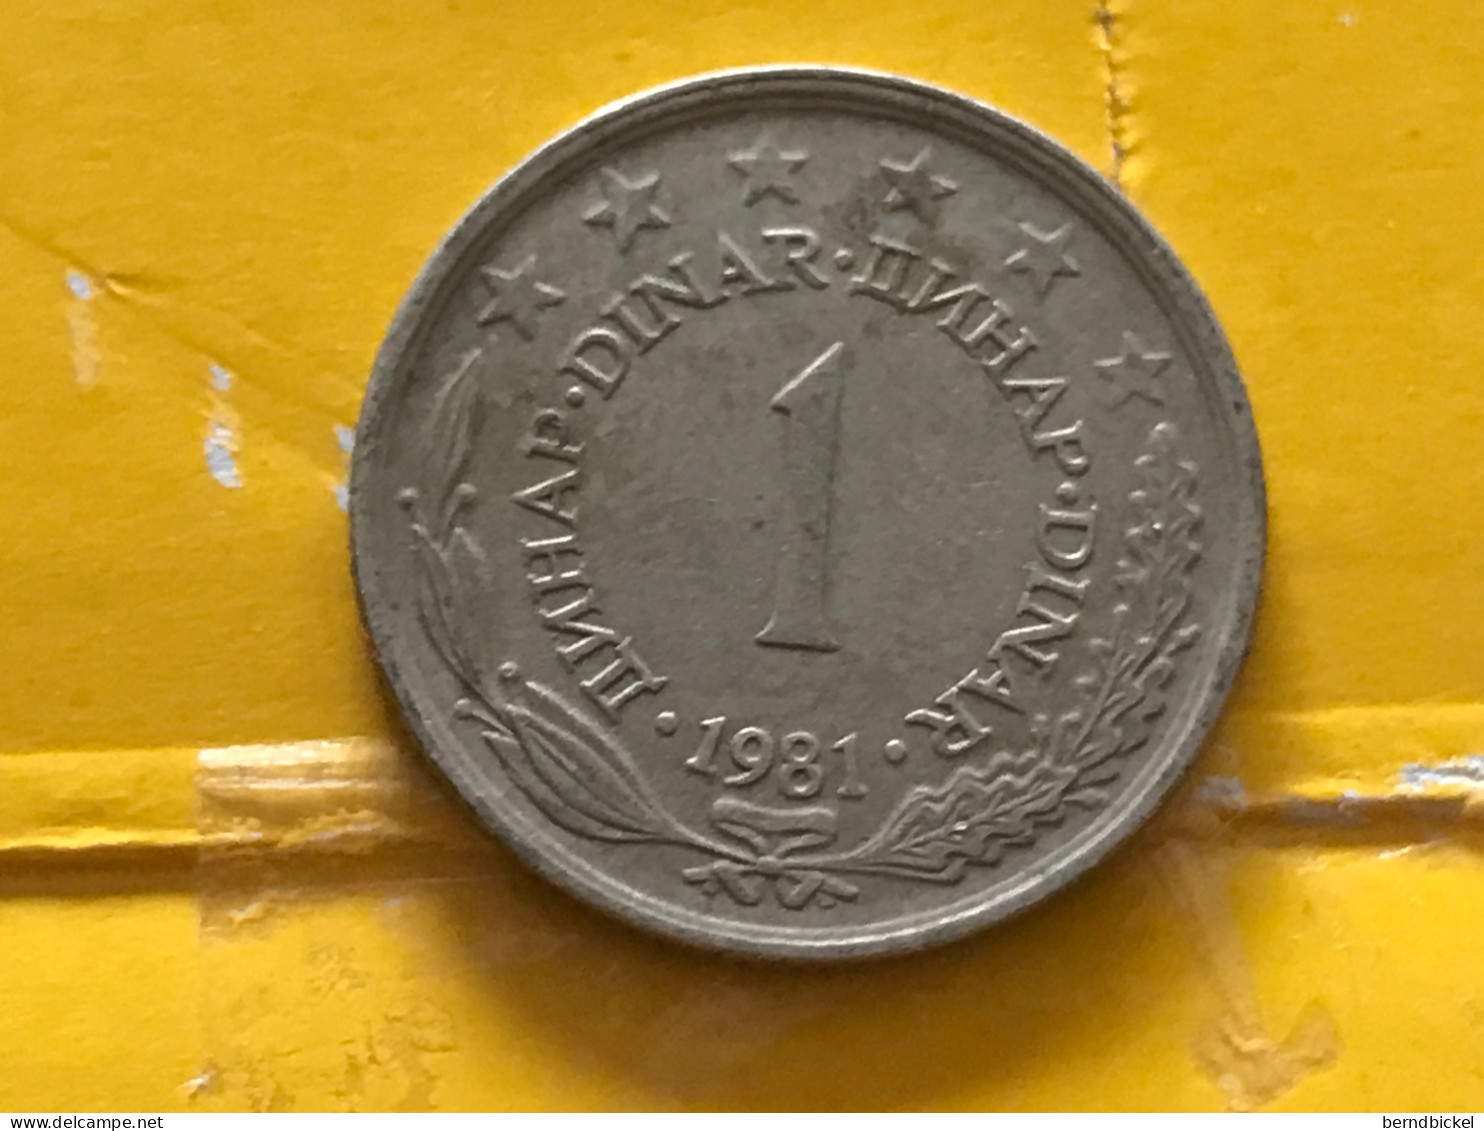 Münze Münzen Umlaufmünze Jugoslawien 1 Dinar 1981 - Yugoslavia